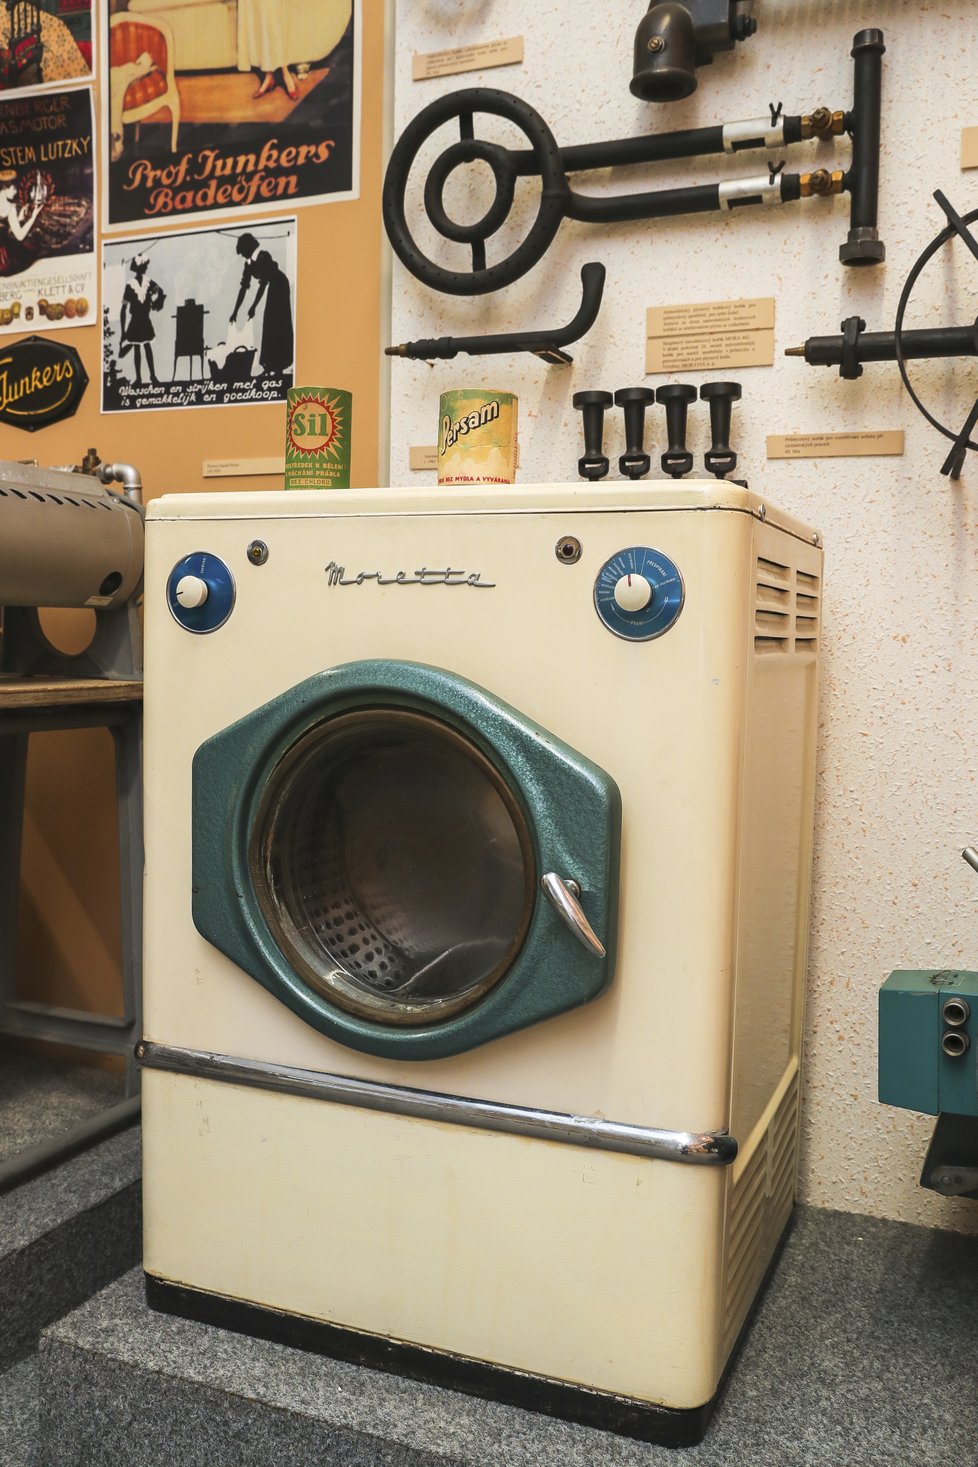 I když se to může zdát jako špatný vtip, dříve byl plyn v domácnostech prakticky všestranně využíván. A to i při praní prádla. Automatická pračka Moretta s plynovým ohřevem vody se v 60. letech nacházela v nejedné československé domácnosti.